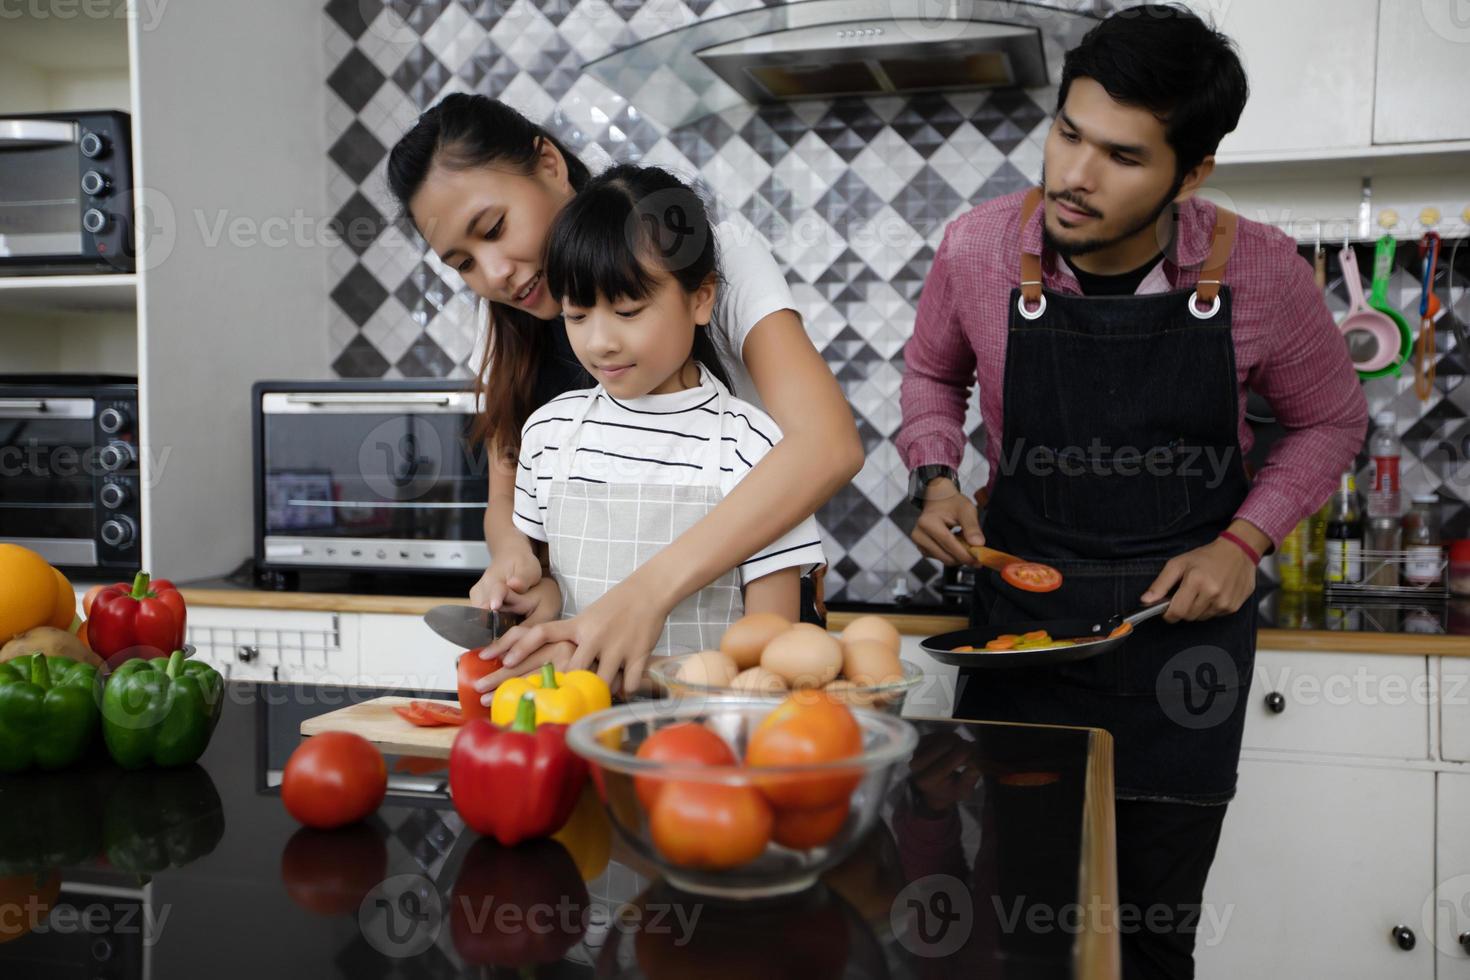 une famille heureuse a papa, maman et leur petite fille qui cuisinent ensemble dans la cuisine photo